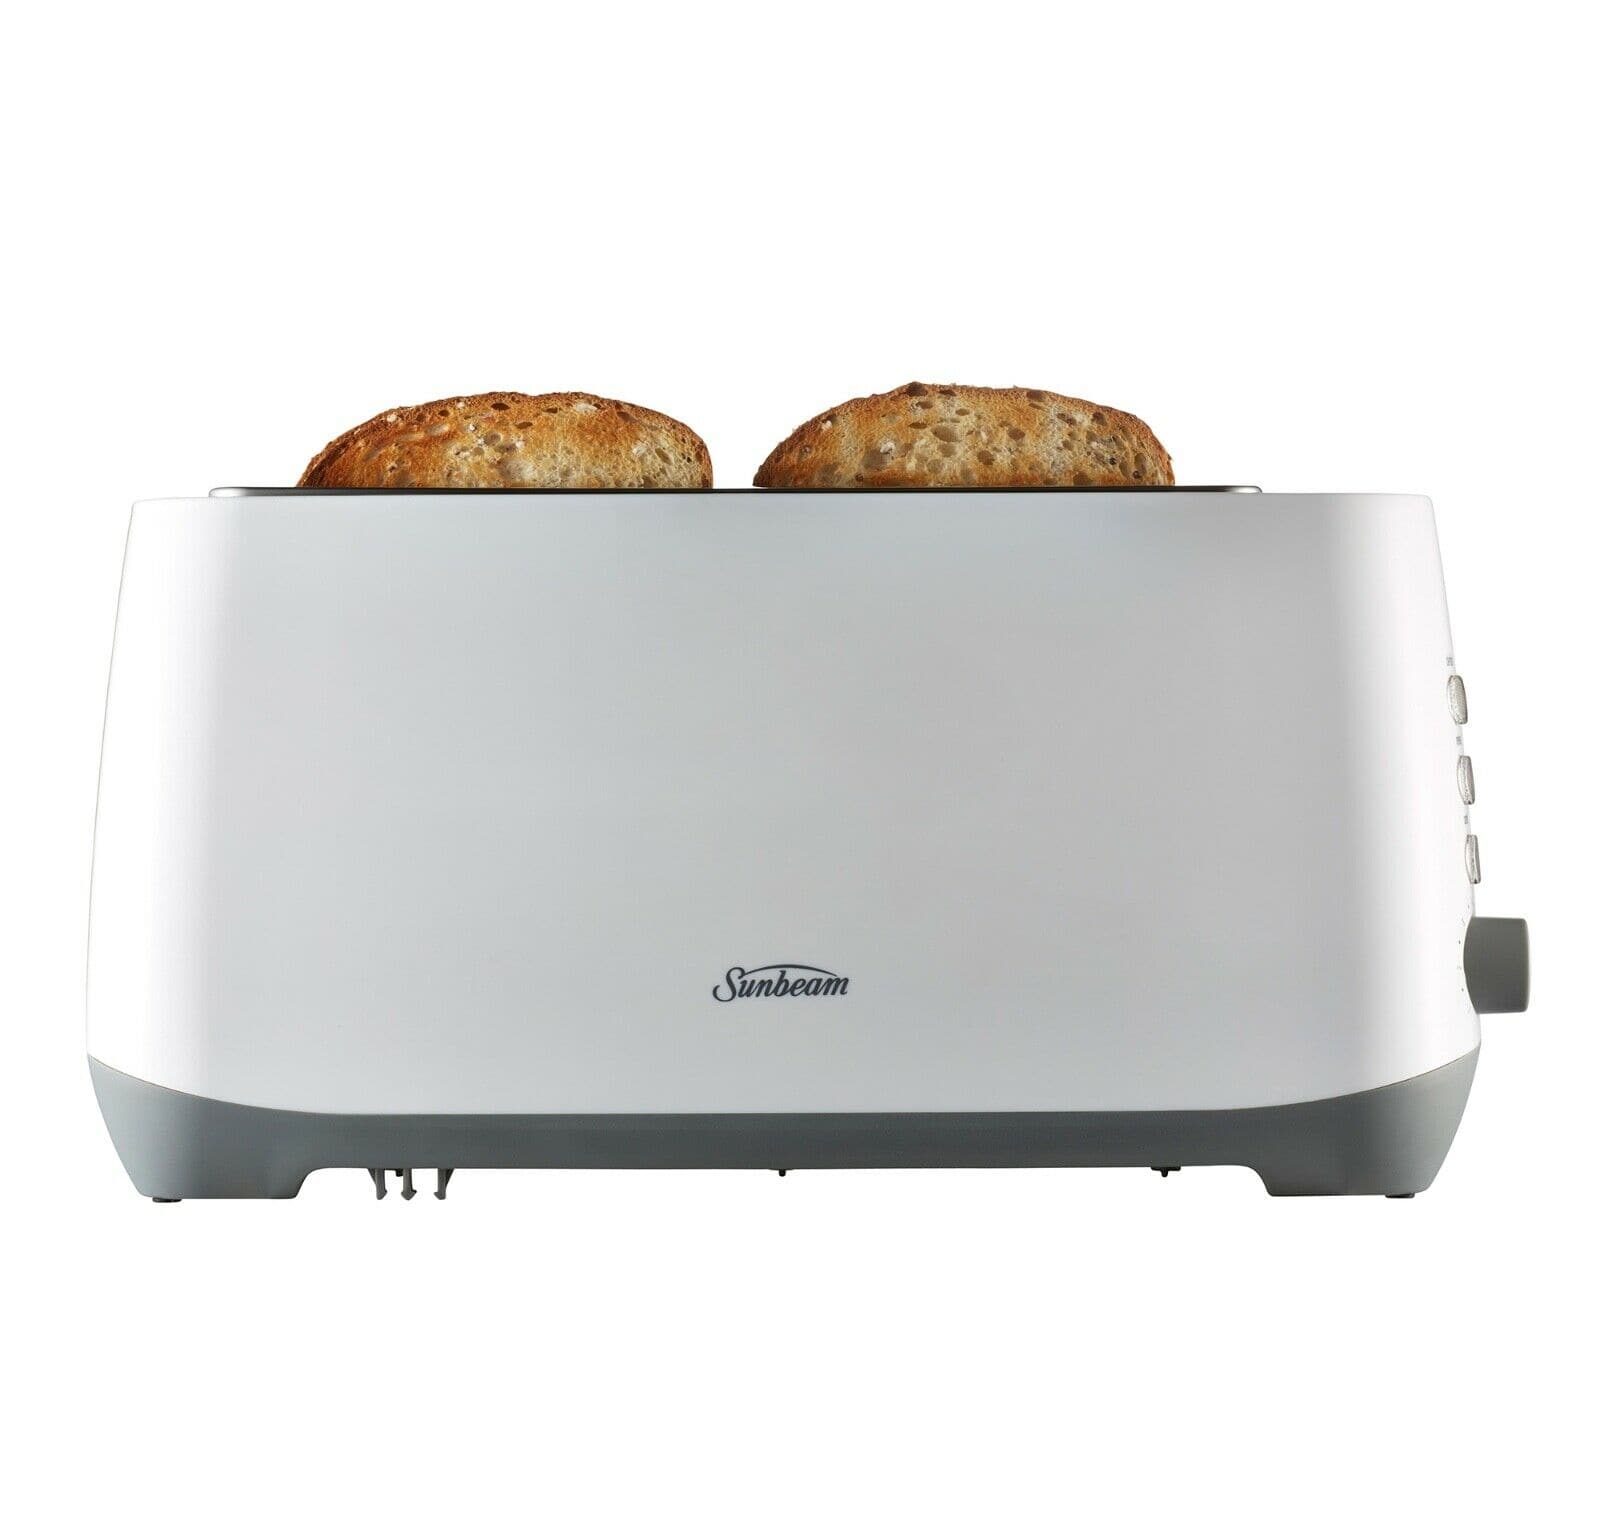 Sunbeam Fresh Start Long Slot 4 Slice Toaster - Stainless Steel